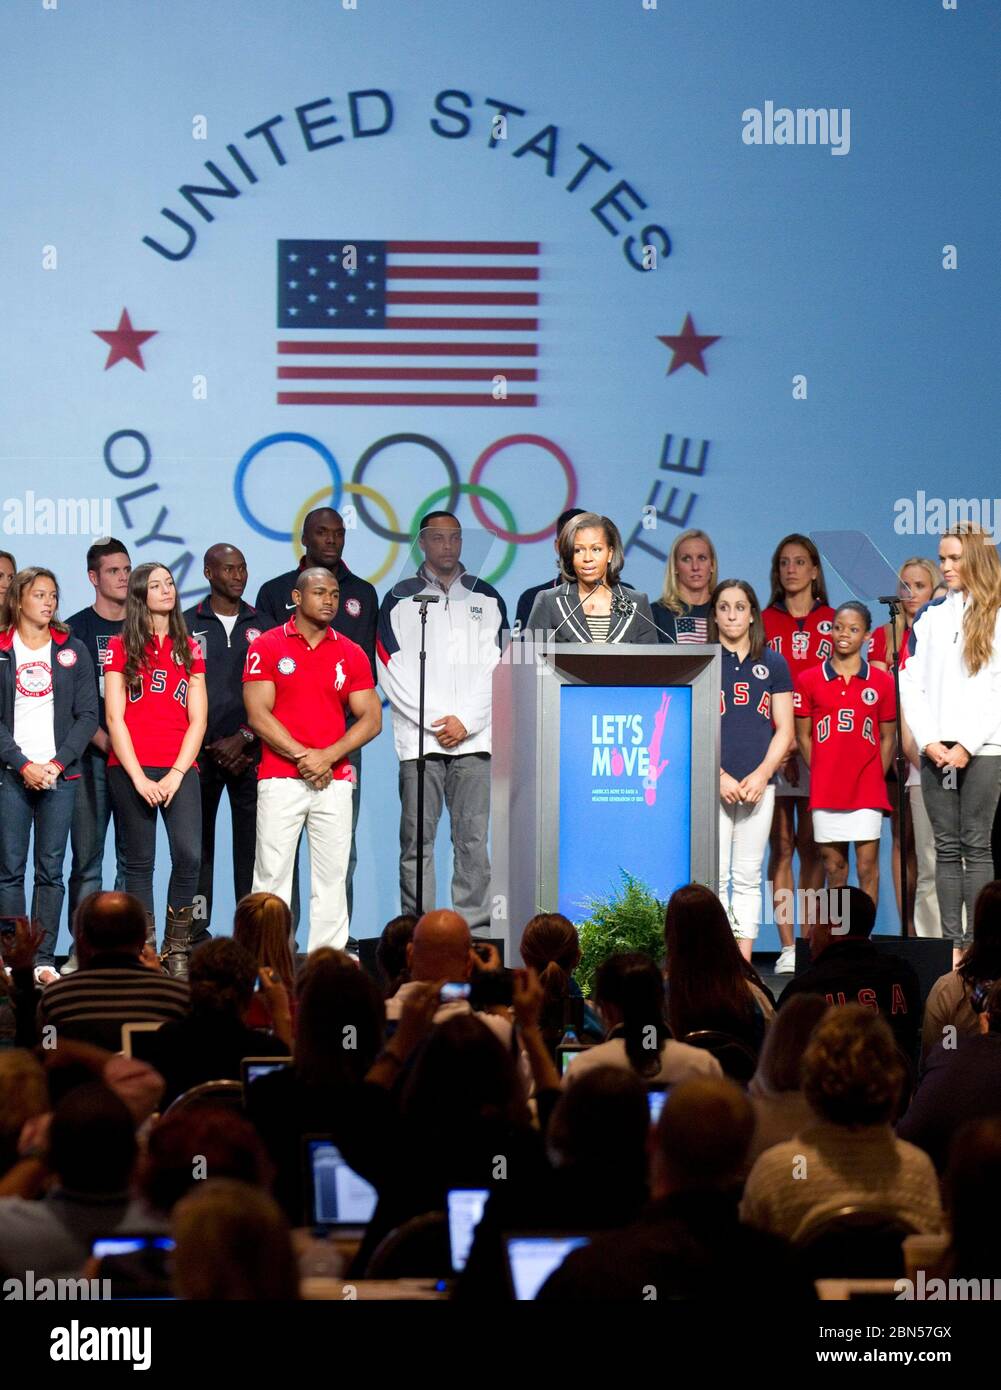 Dallas Texas USA, mai 2012: Première dame des États-Unis Michelle Obama s'exprime au Sommet des médias olympiques des États-Unis avec plusieurs athlètes sur scène. Marjorie Kamys Cotera/Daemmrich Photographie Banque D'Images